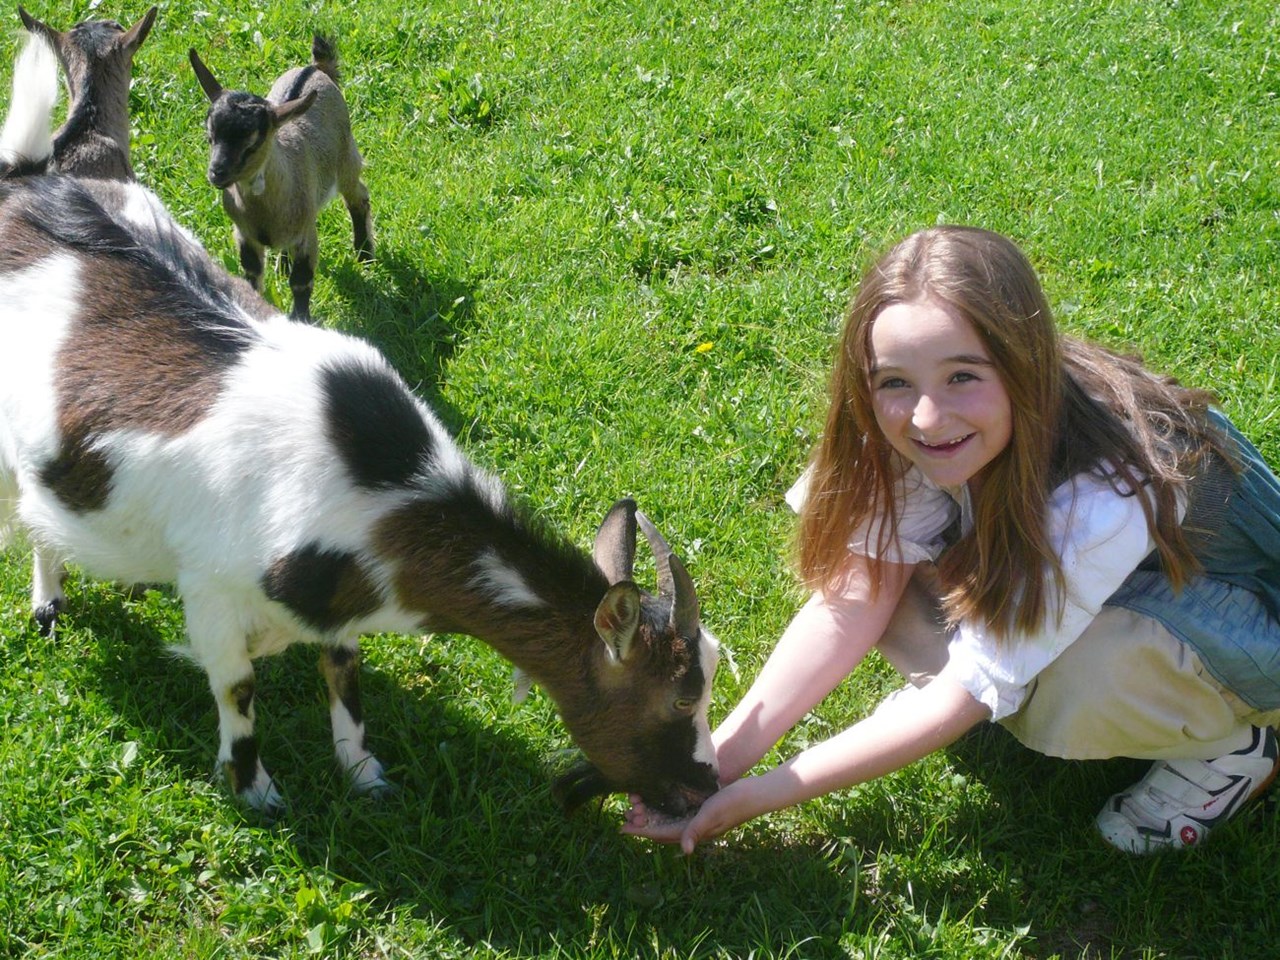 Oberhof Onze dieren Dieren voor kinderen